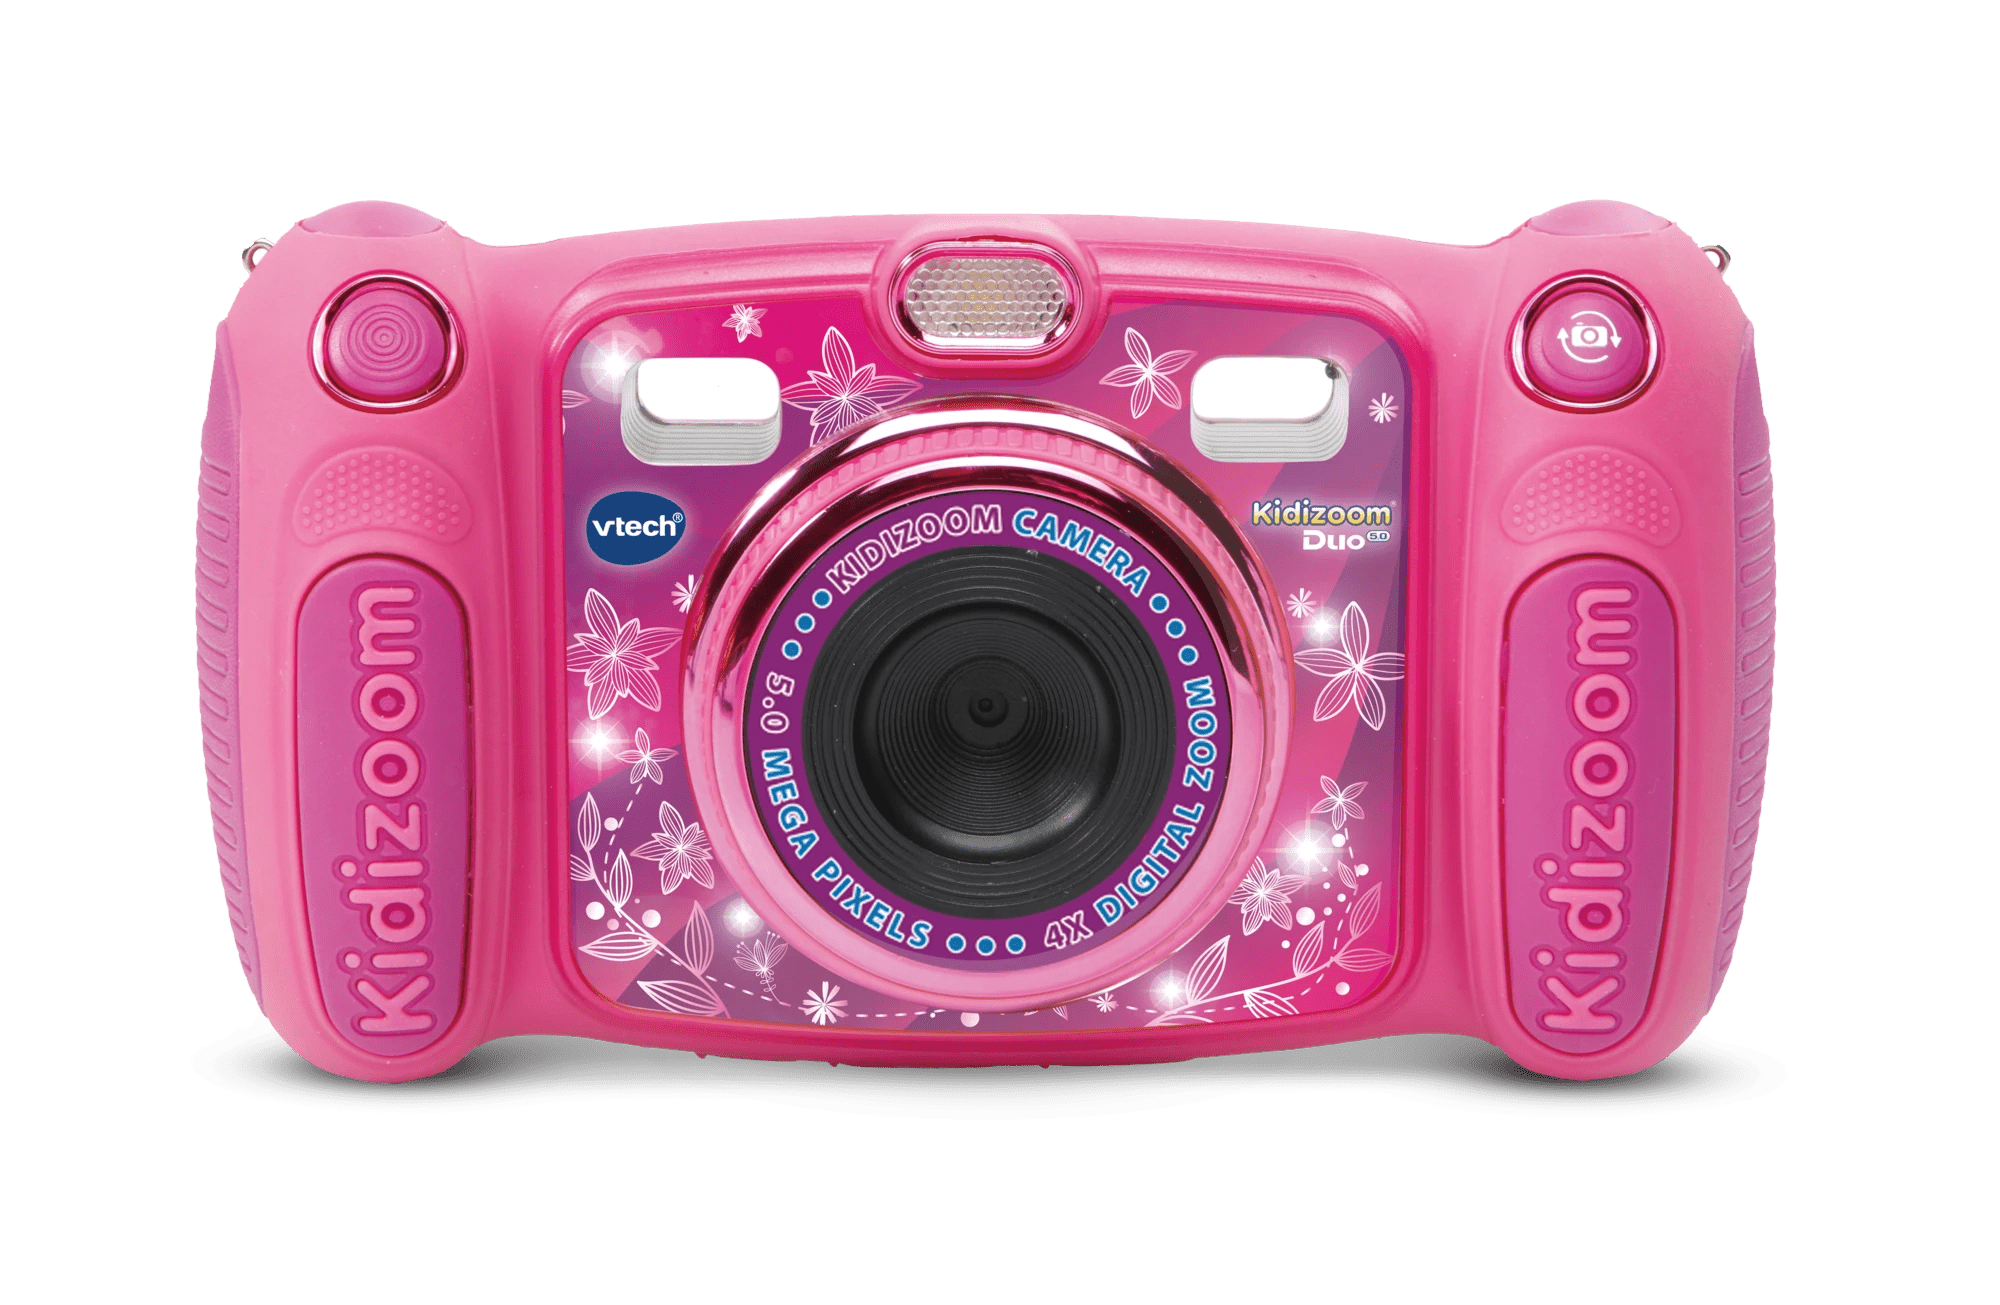 Best Buy: VTech KidiZoom Duo DX 5.0-Megapixel Digital Camera Blue